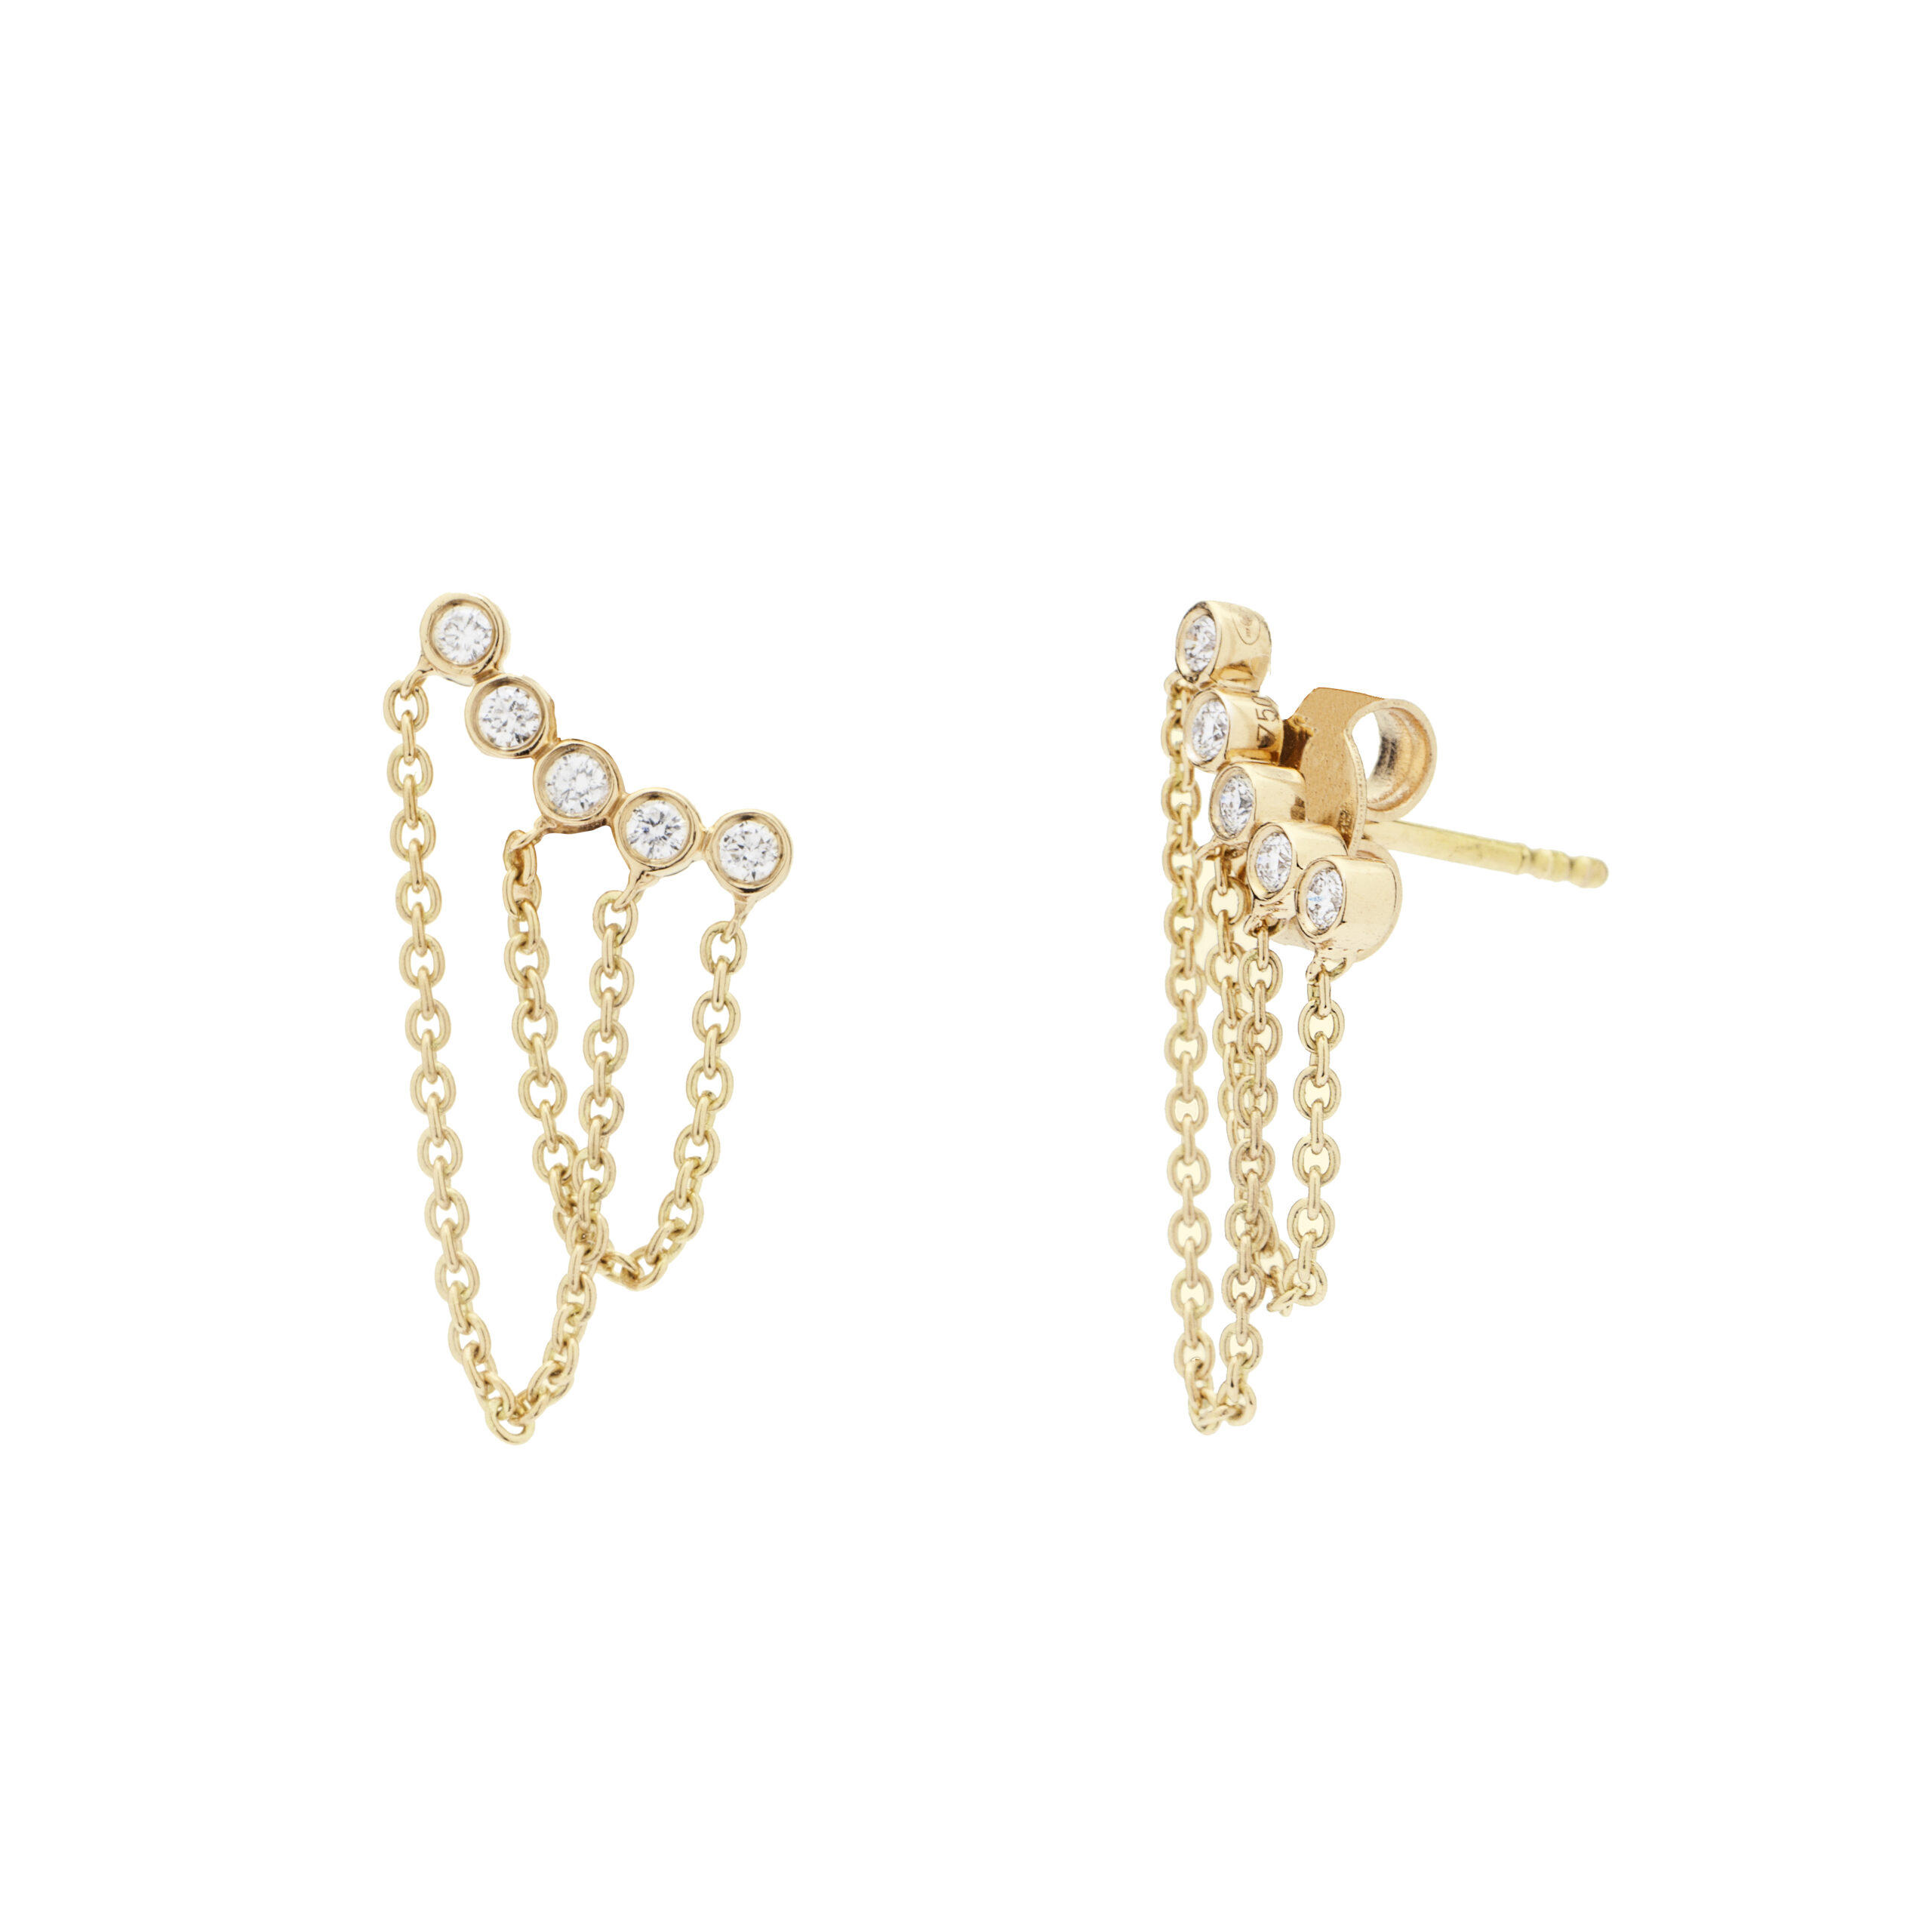 Boucles d'oreilles chainettes montantes en or jaune et diamants fabriquées en France. Bijou cadeau tendance rock pour femmes.